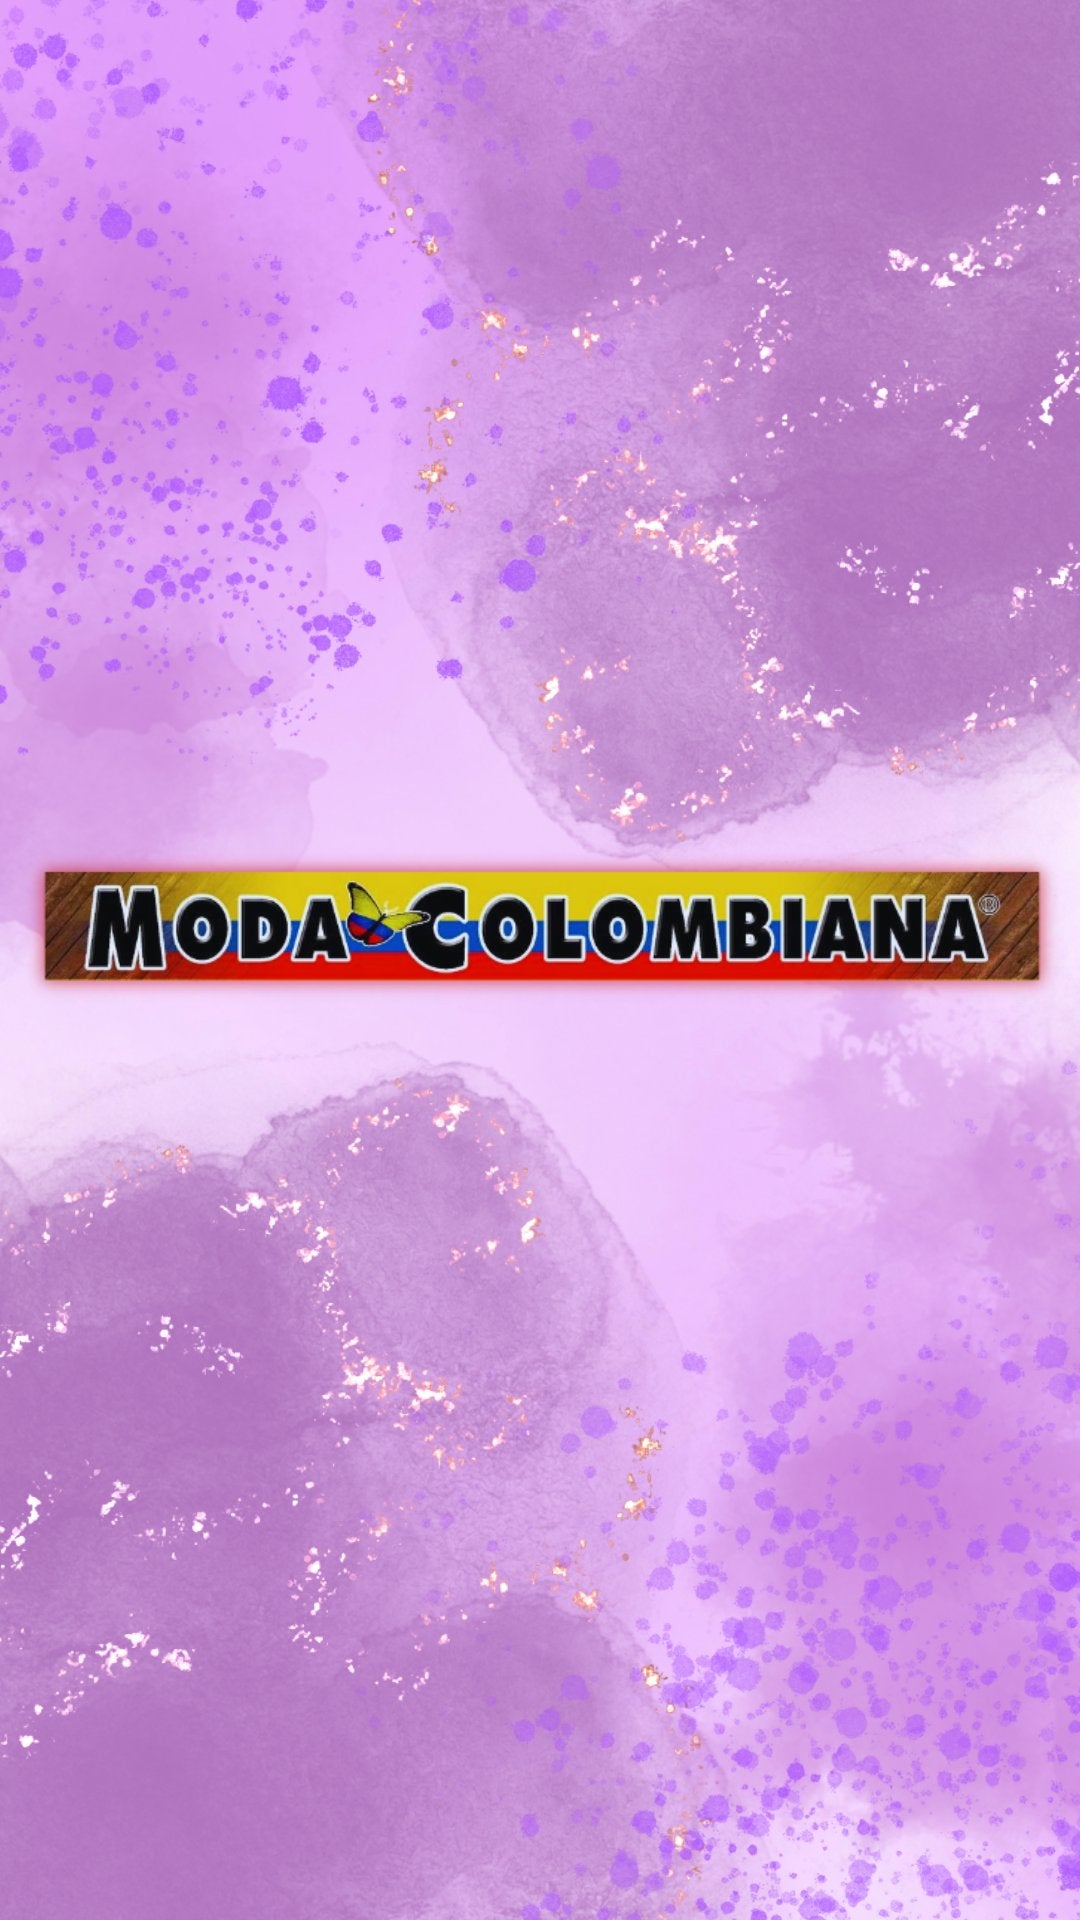 Access ropadesdecolombia.com. Moda Colombiana, Ropa Colombiana